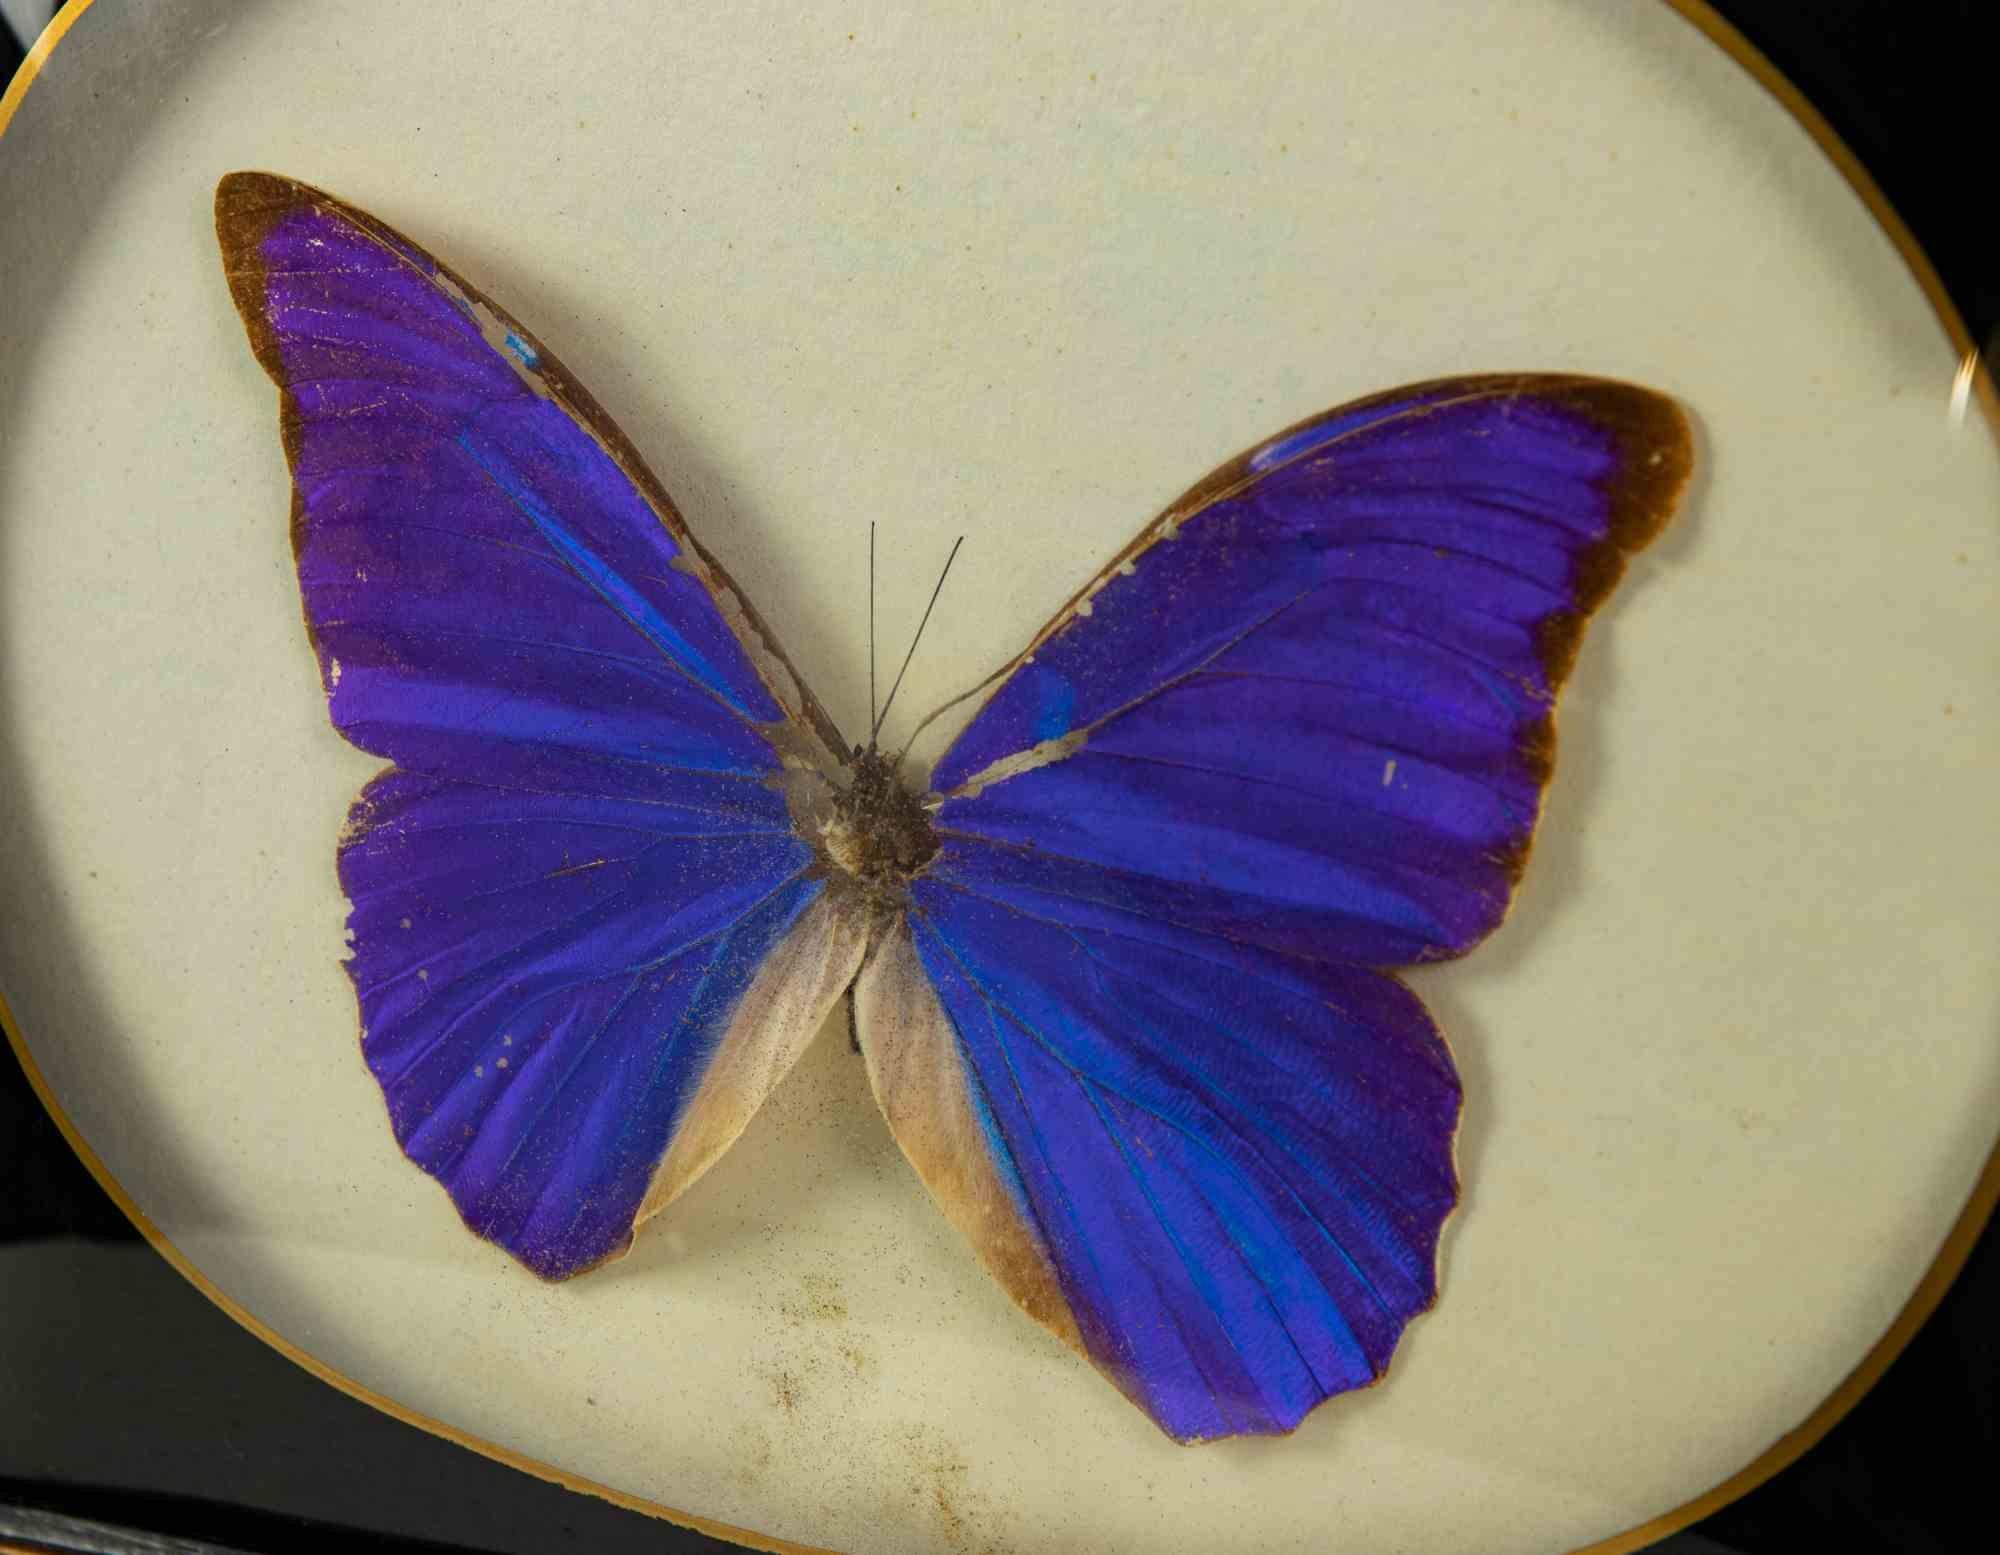 Morphos anassibia est un papillon embaumé empaillé dans un cadre. 

Espèce Morphos anassibia bleu.

19,5 x 25 cm.

Très bonnes conditions !

 